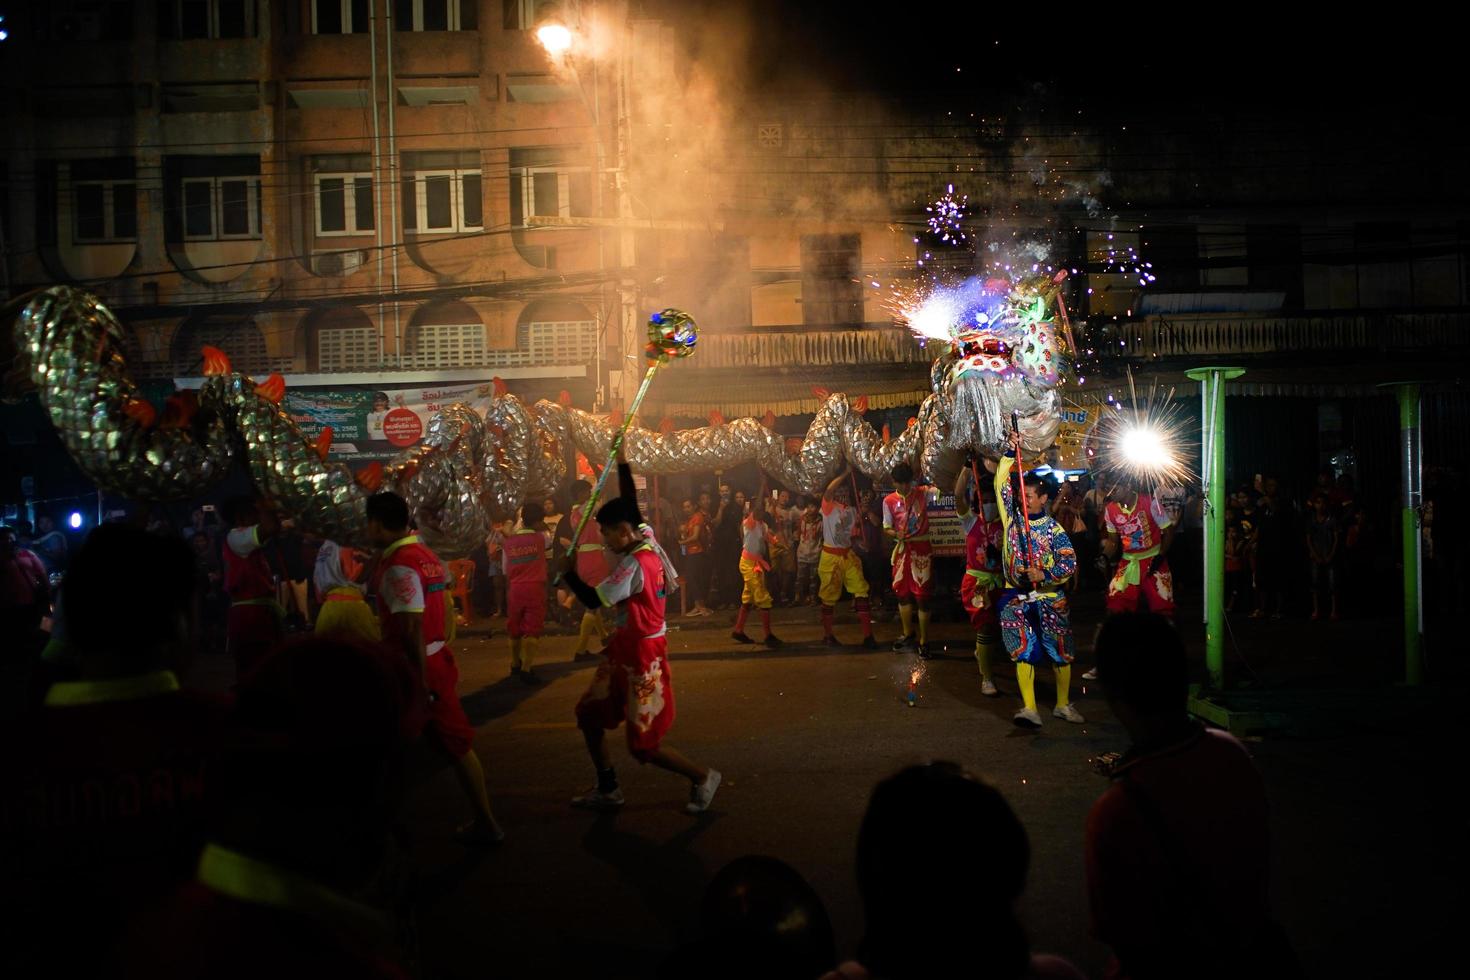 ratchaburi, Thailand 2018 - kinesiskt nyårsfirande av paraden att manipulera en flygande drake med fyrverkeri på den offentliga gatan i centrum foto